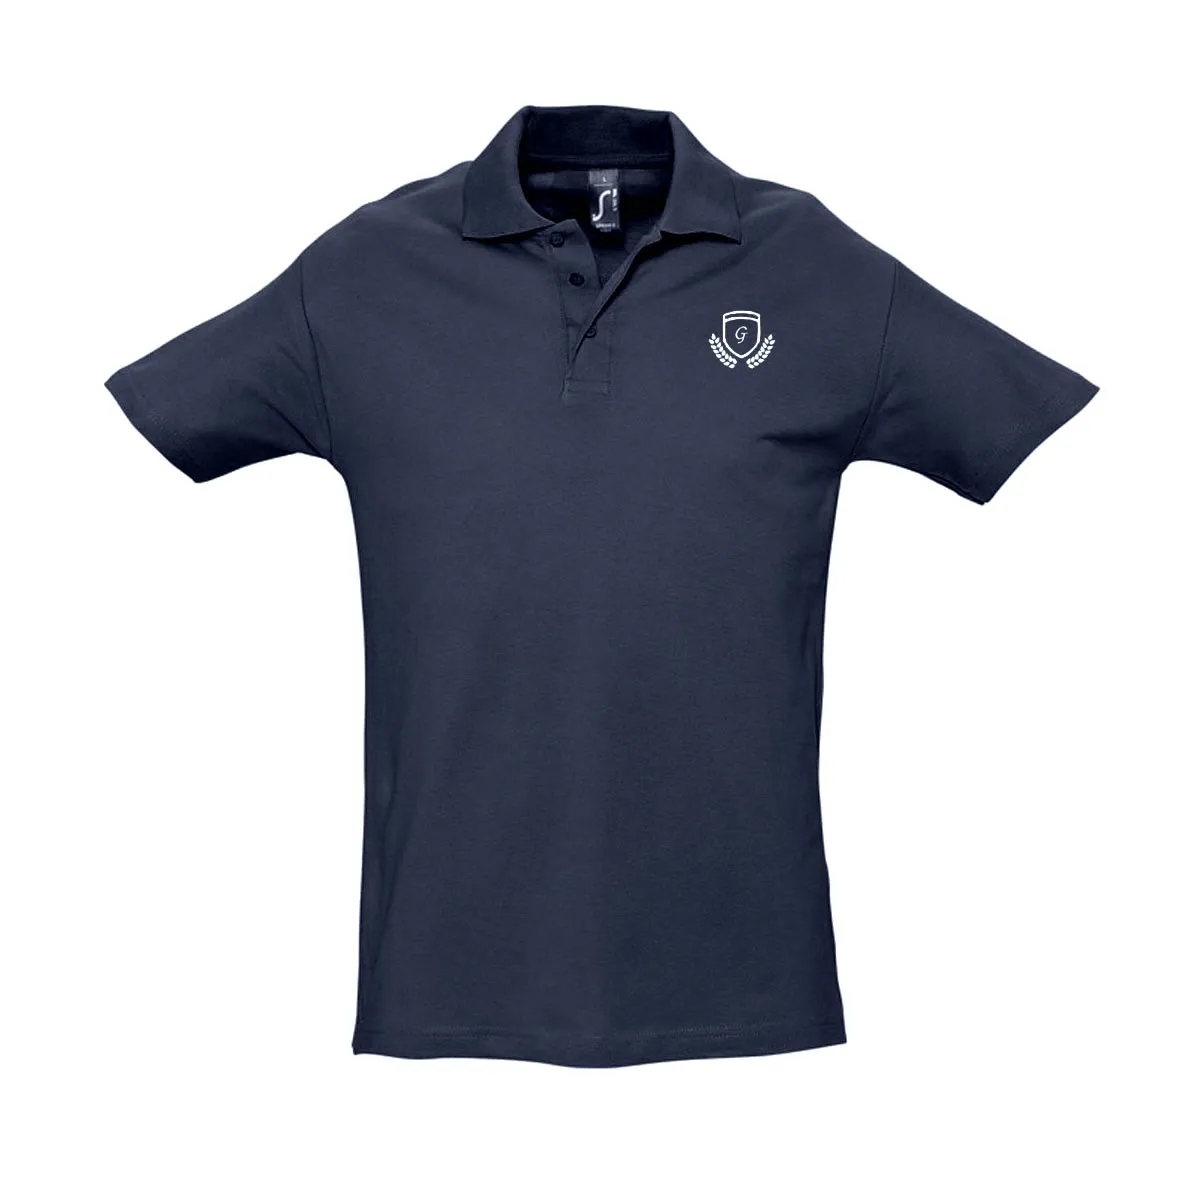 Personalisierbares Poloshirt für Männer - Blau - M